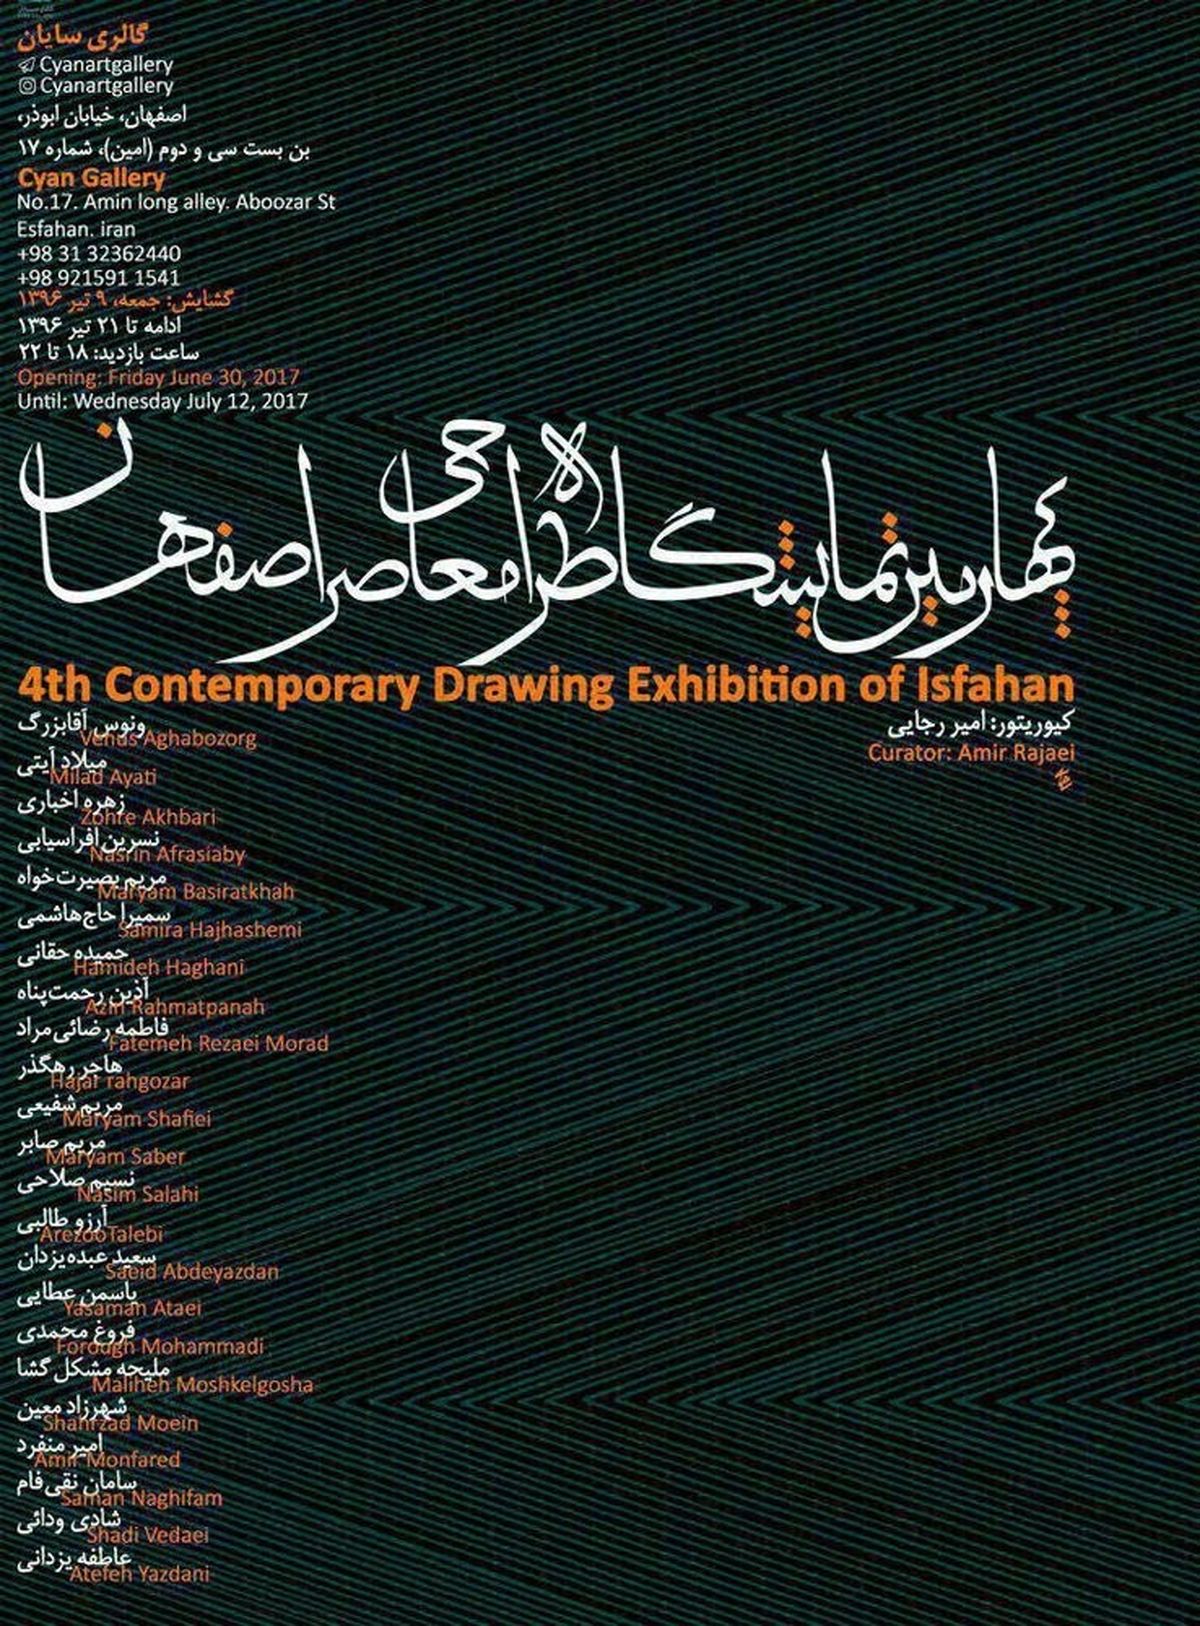 نمایشگاه طراحی معاصر اصفهان در گالری سایان